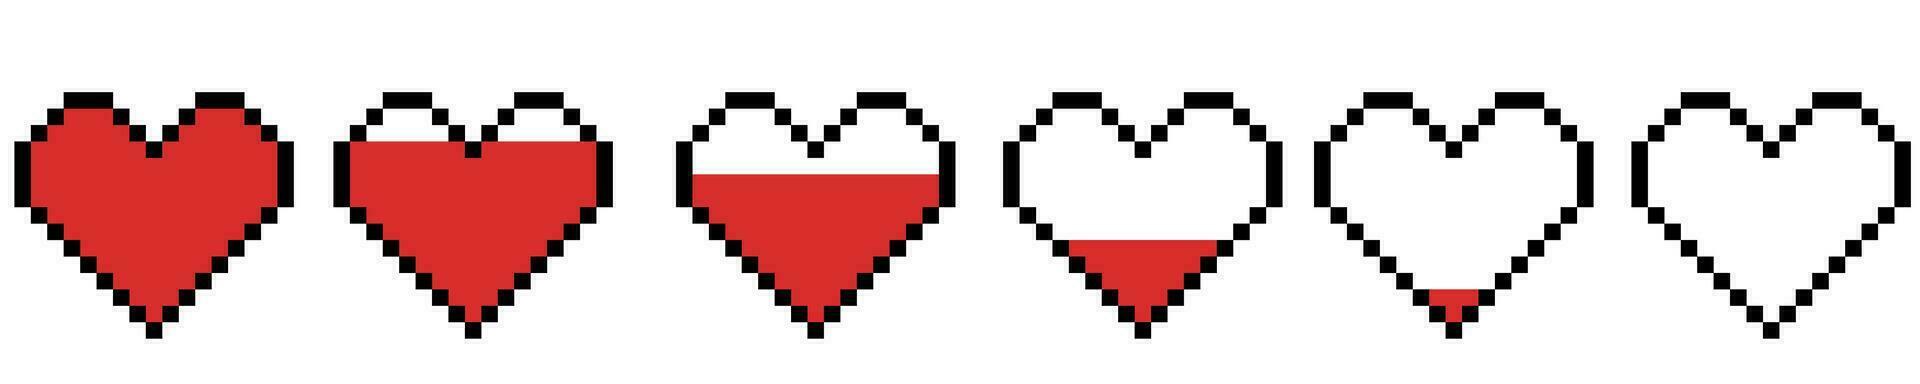 pixel hjärta samling. pixel hjärta ikon, pixel hjärtan för spel. röd hjärtan av liv, spel liv symbol. indikatorer av hälsa, spel framsteg barer. vektor